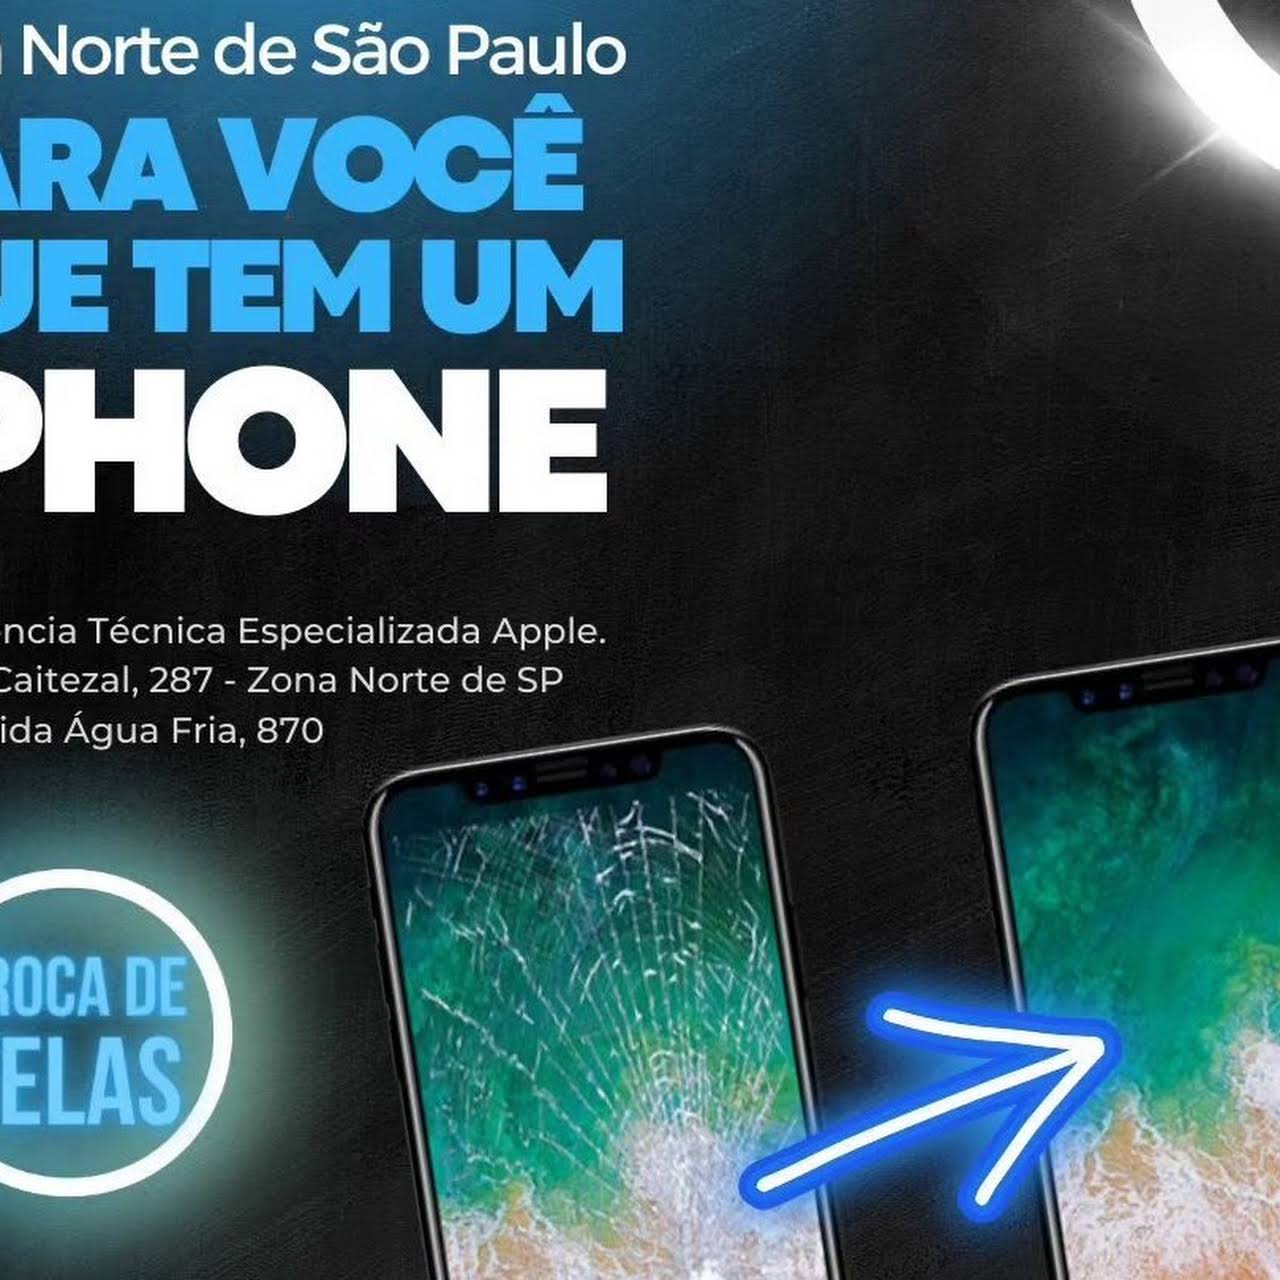 MundoFone ® - Assistência Técnica Para Telefone em Fátima